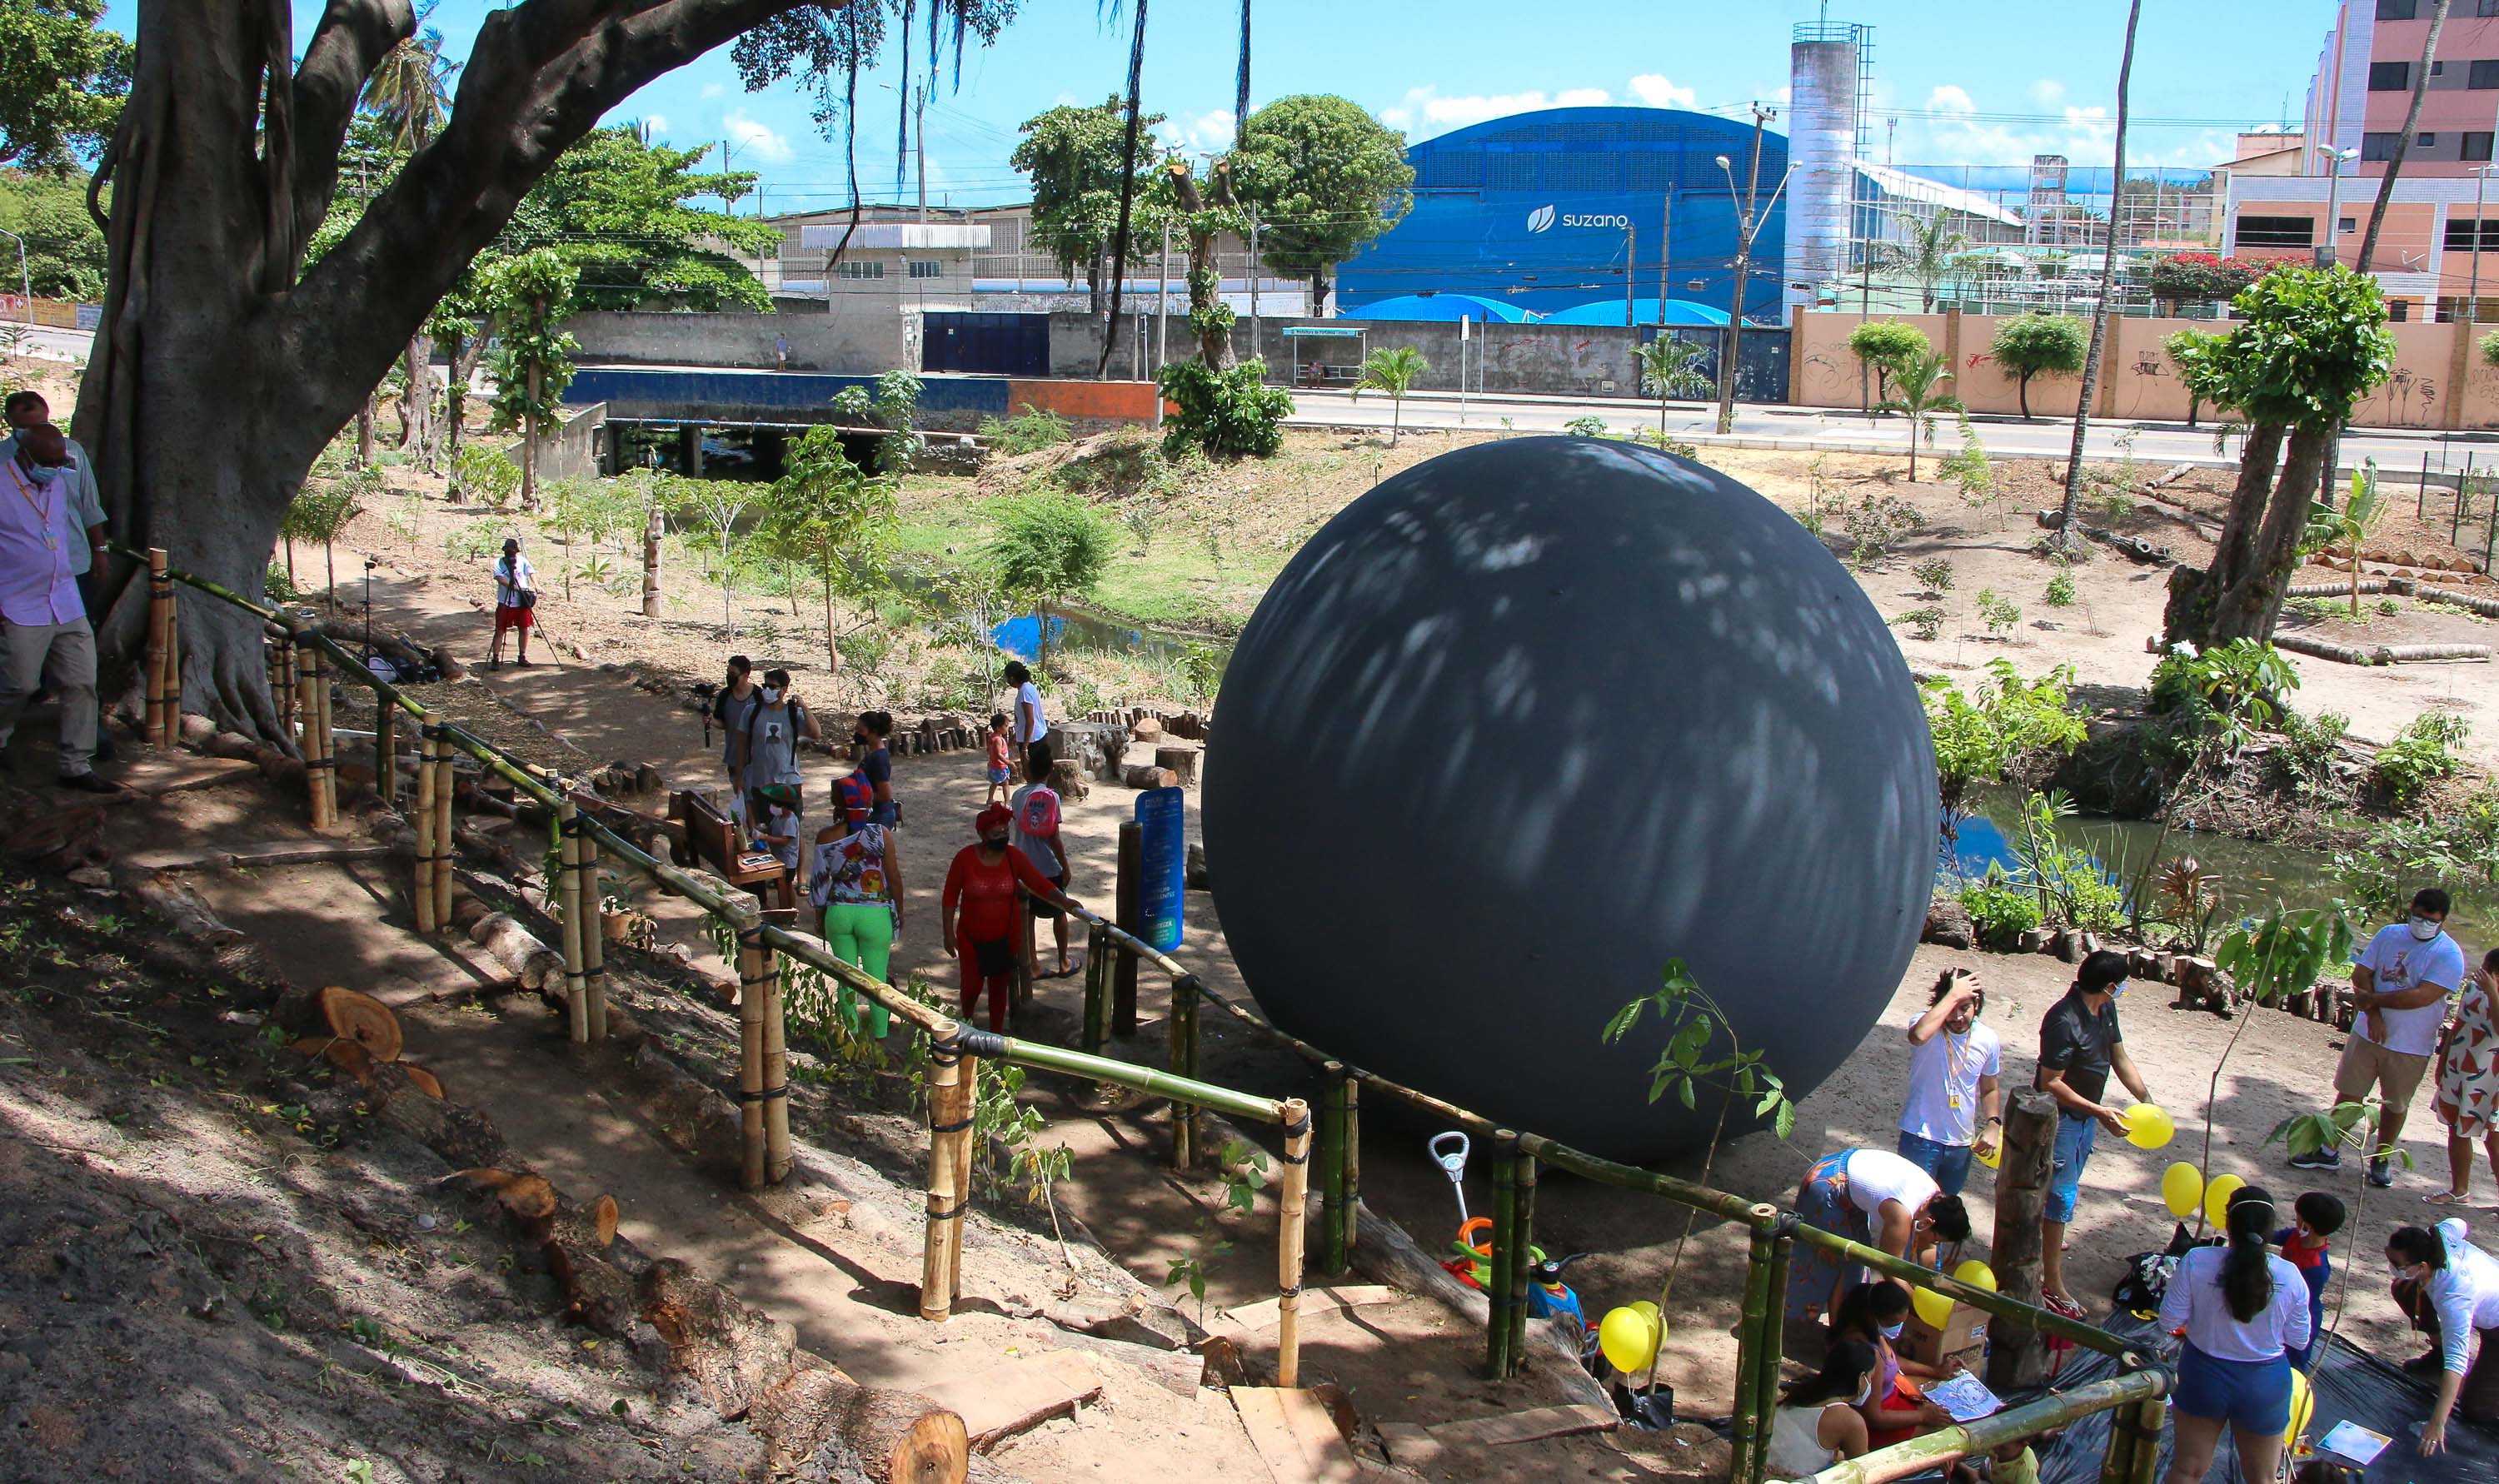 uma bolha cinza com cerca de três metros de diâmetro instalada no micro parque